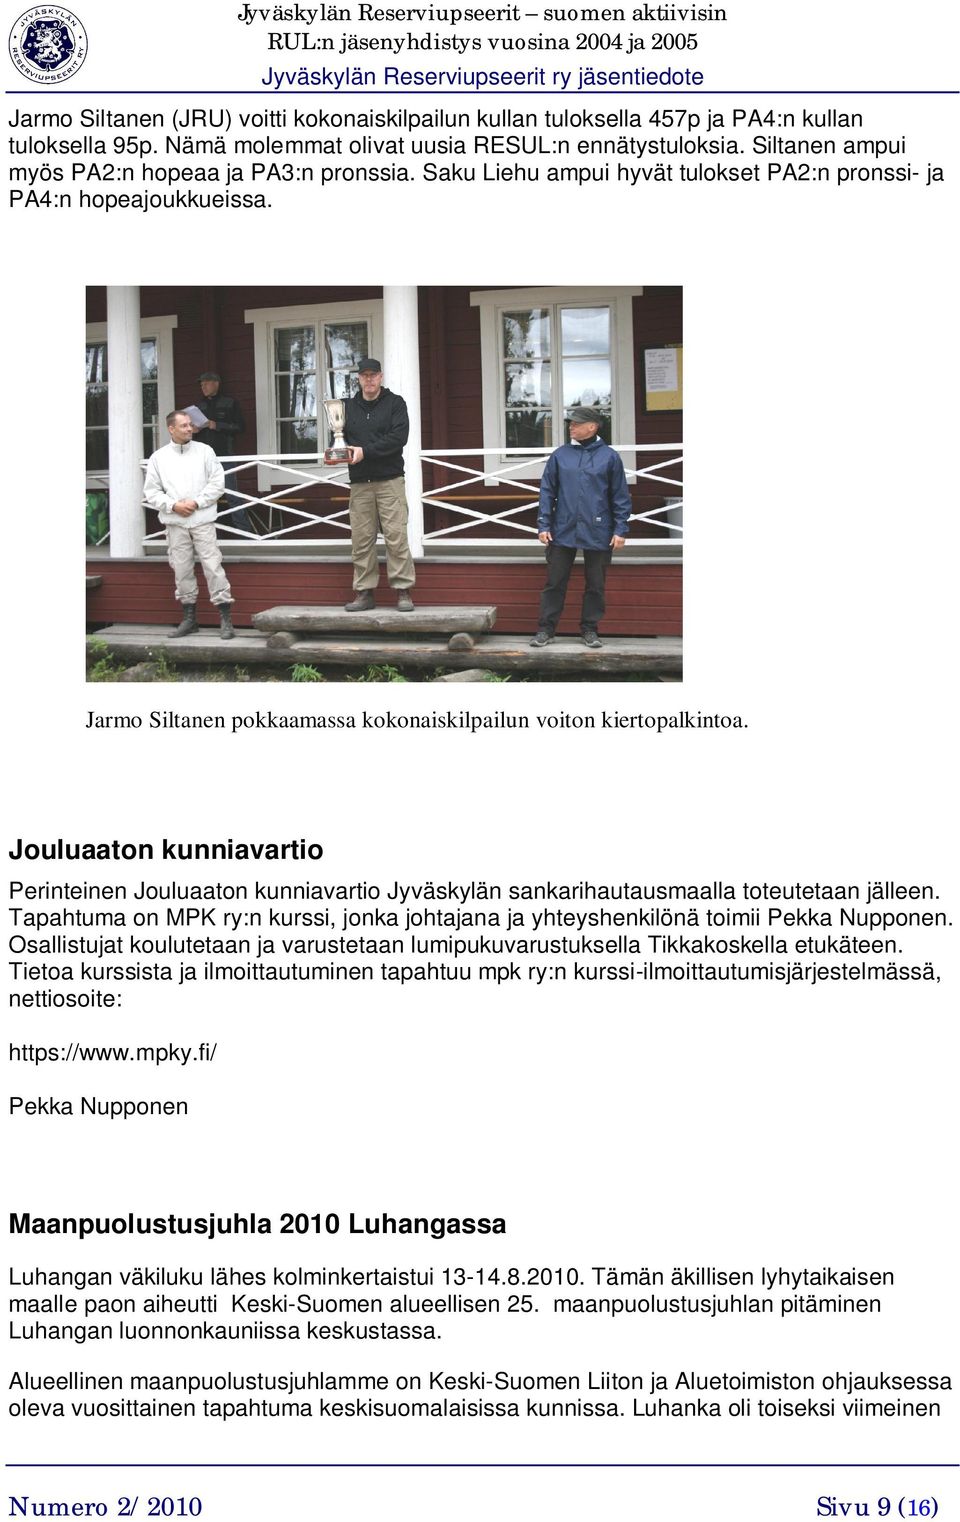 Jouluaaton kunniavartio Perinteinen Jouluaaton kunniavartio Jyväskylän sankarihautausmaalla toteutetaan jälleen. Tapahtuma on MPK ry:n kurssi, jonka johtajana ja yhteyshenkilönä toimii Pekka Nupponen.